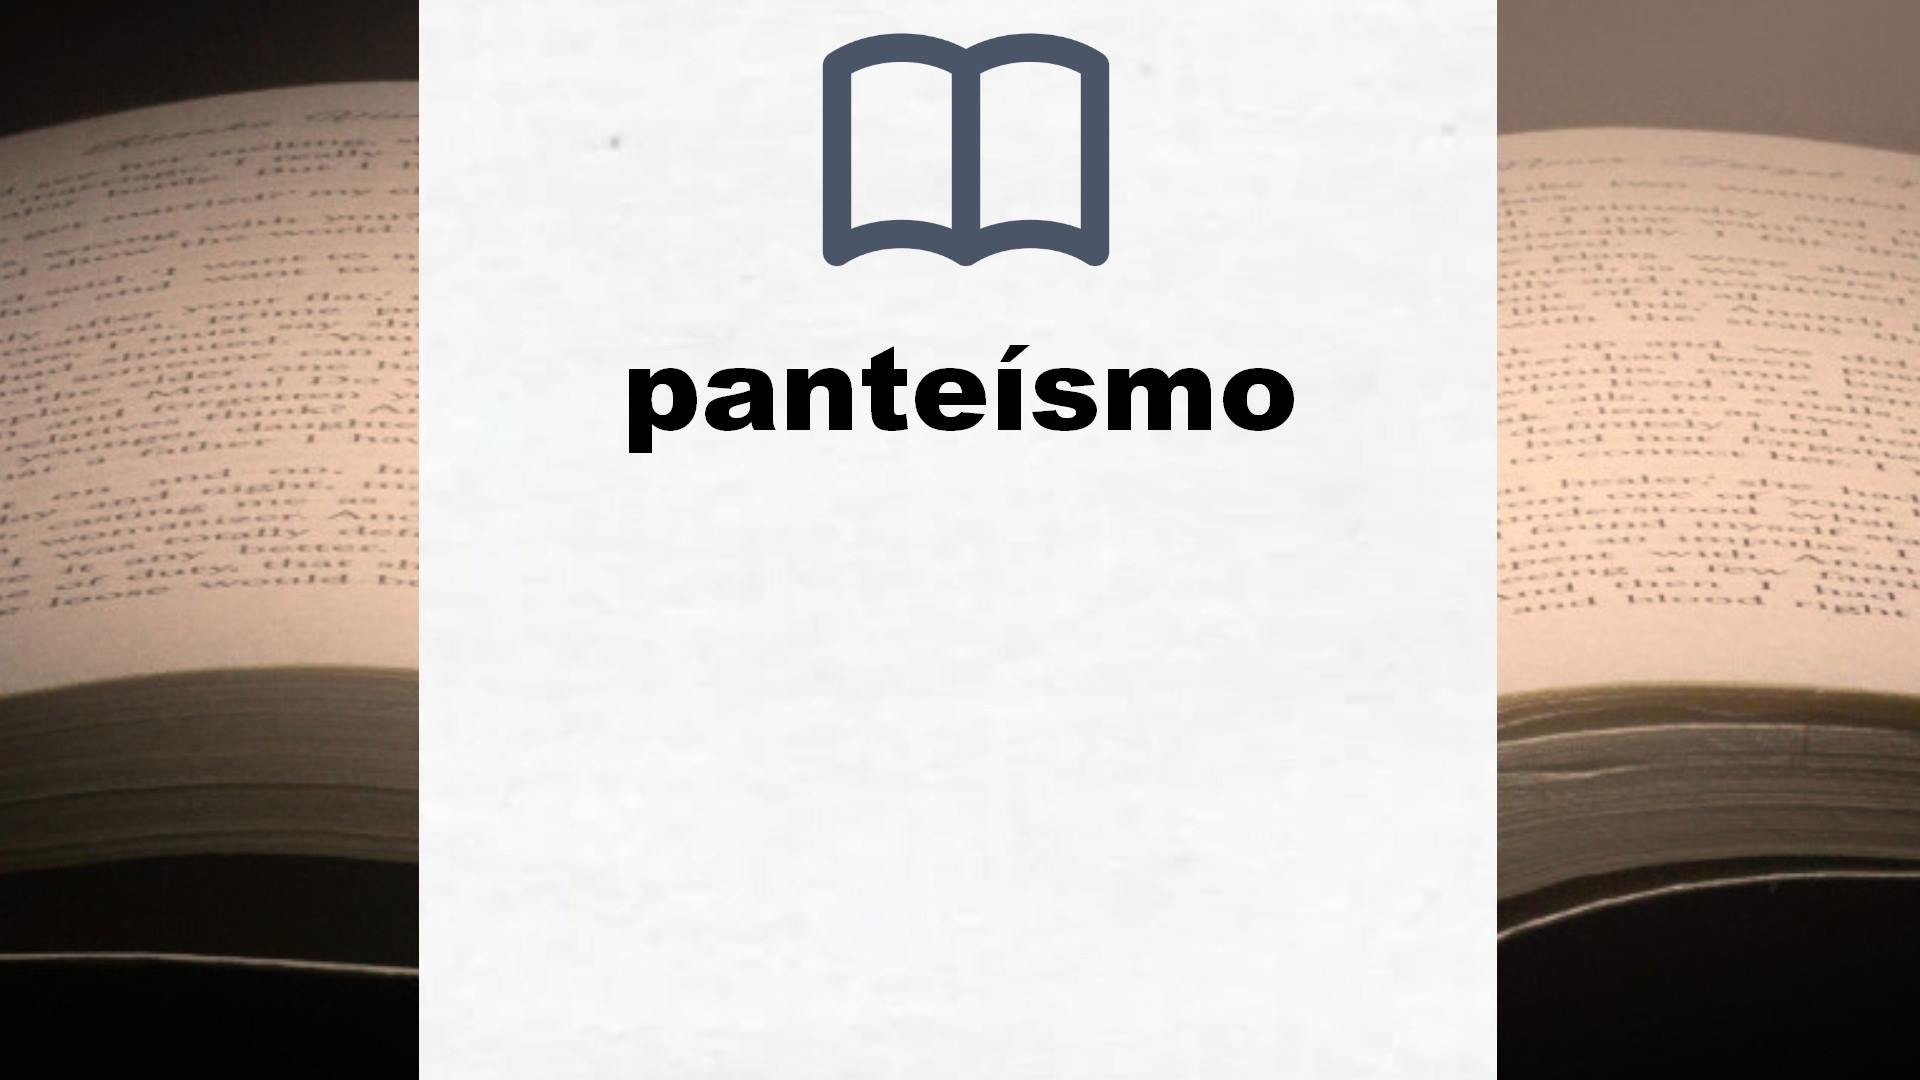 Libros sobre panteísmo